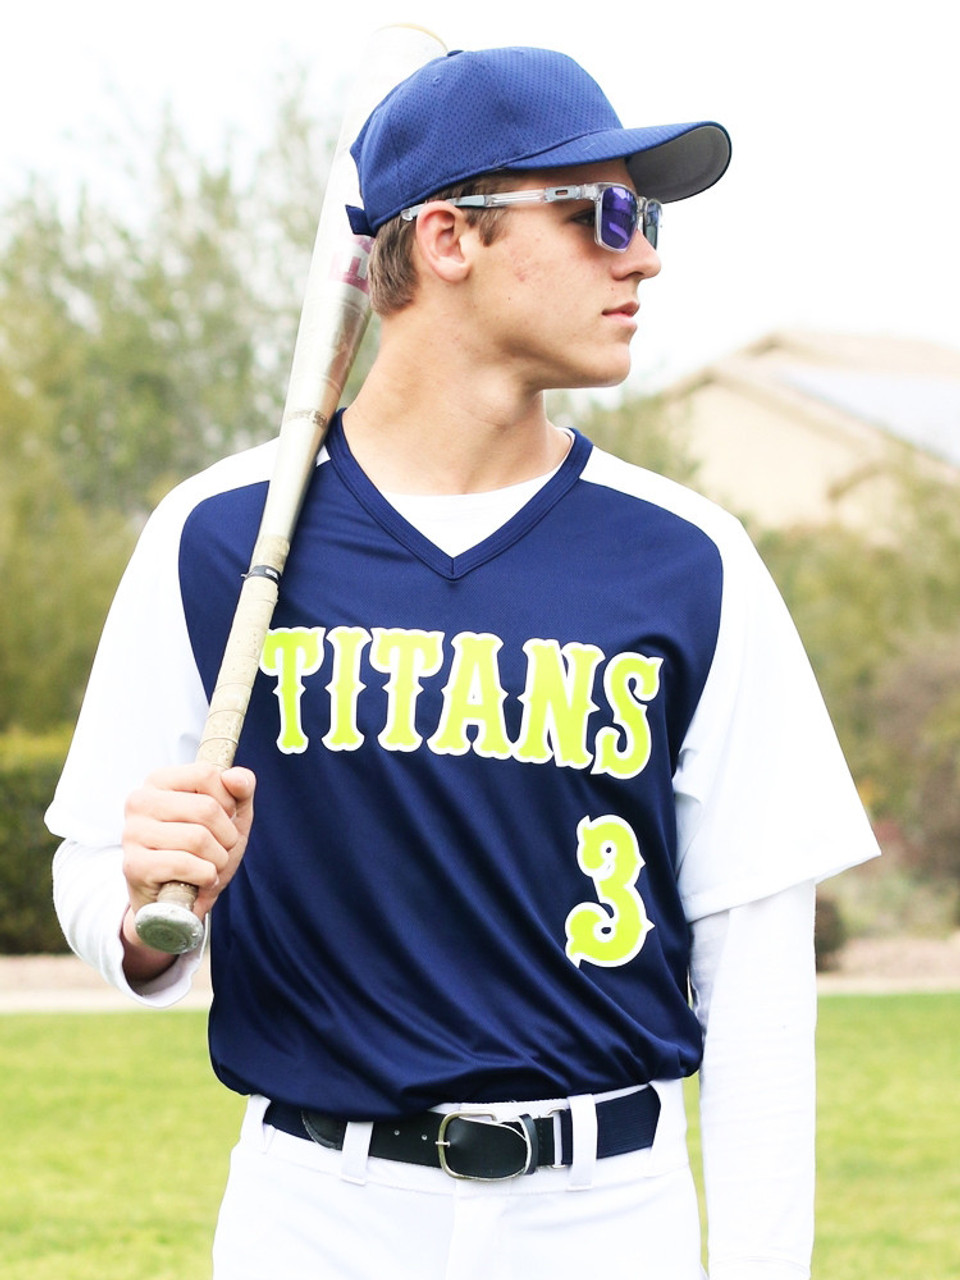 Youth Baseball Jerseys, Uniforms